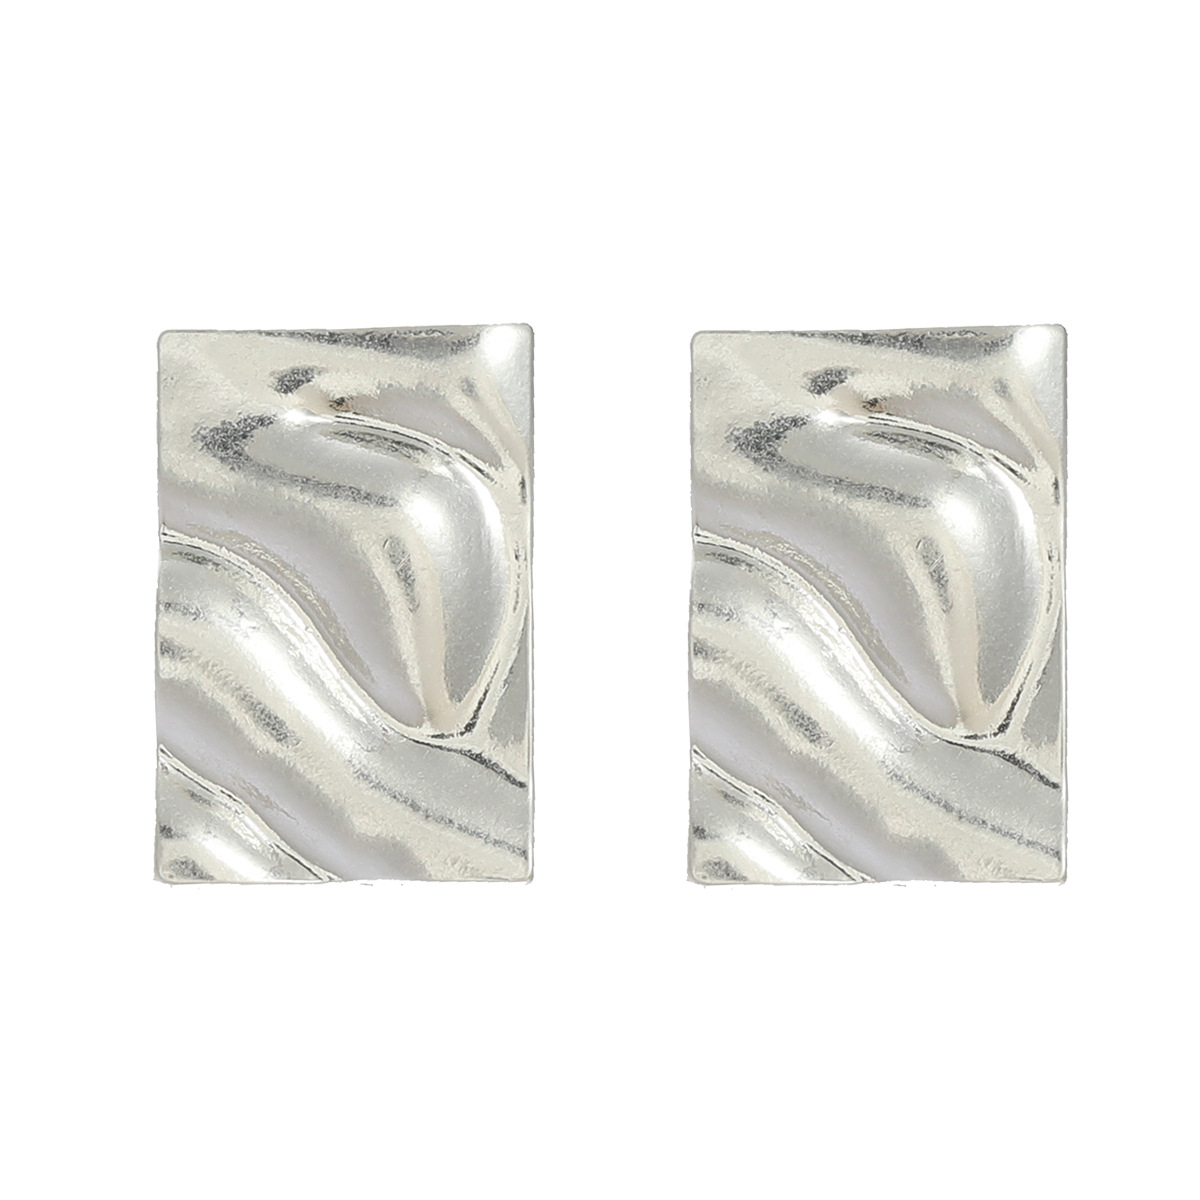 2 silver